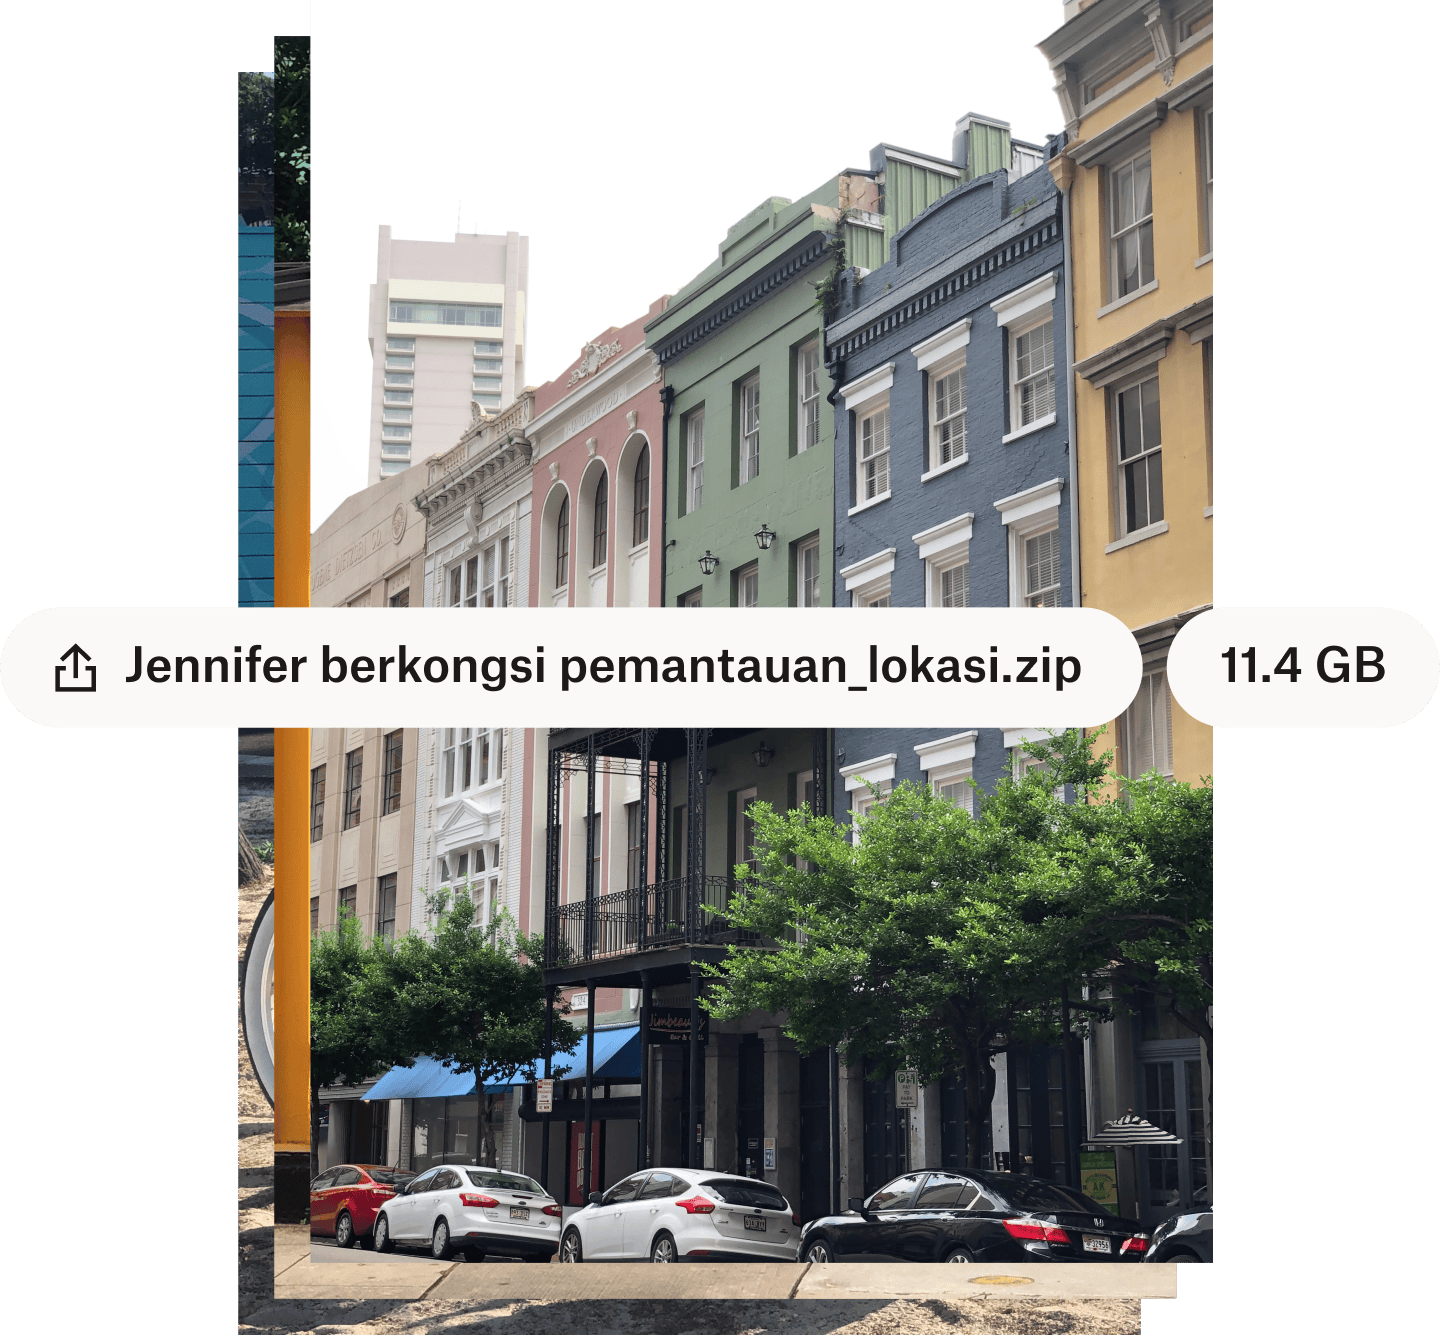 Foto jalan bandar dengan bangunan berwarna-warni dengan nama fail dan saiz fail bertindih dalam gelembung teks putih